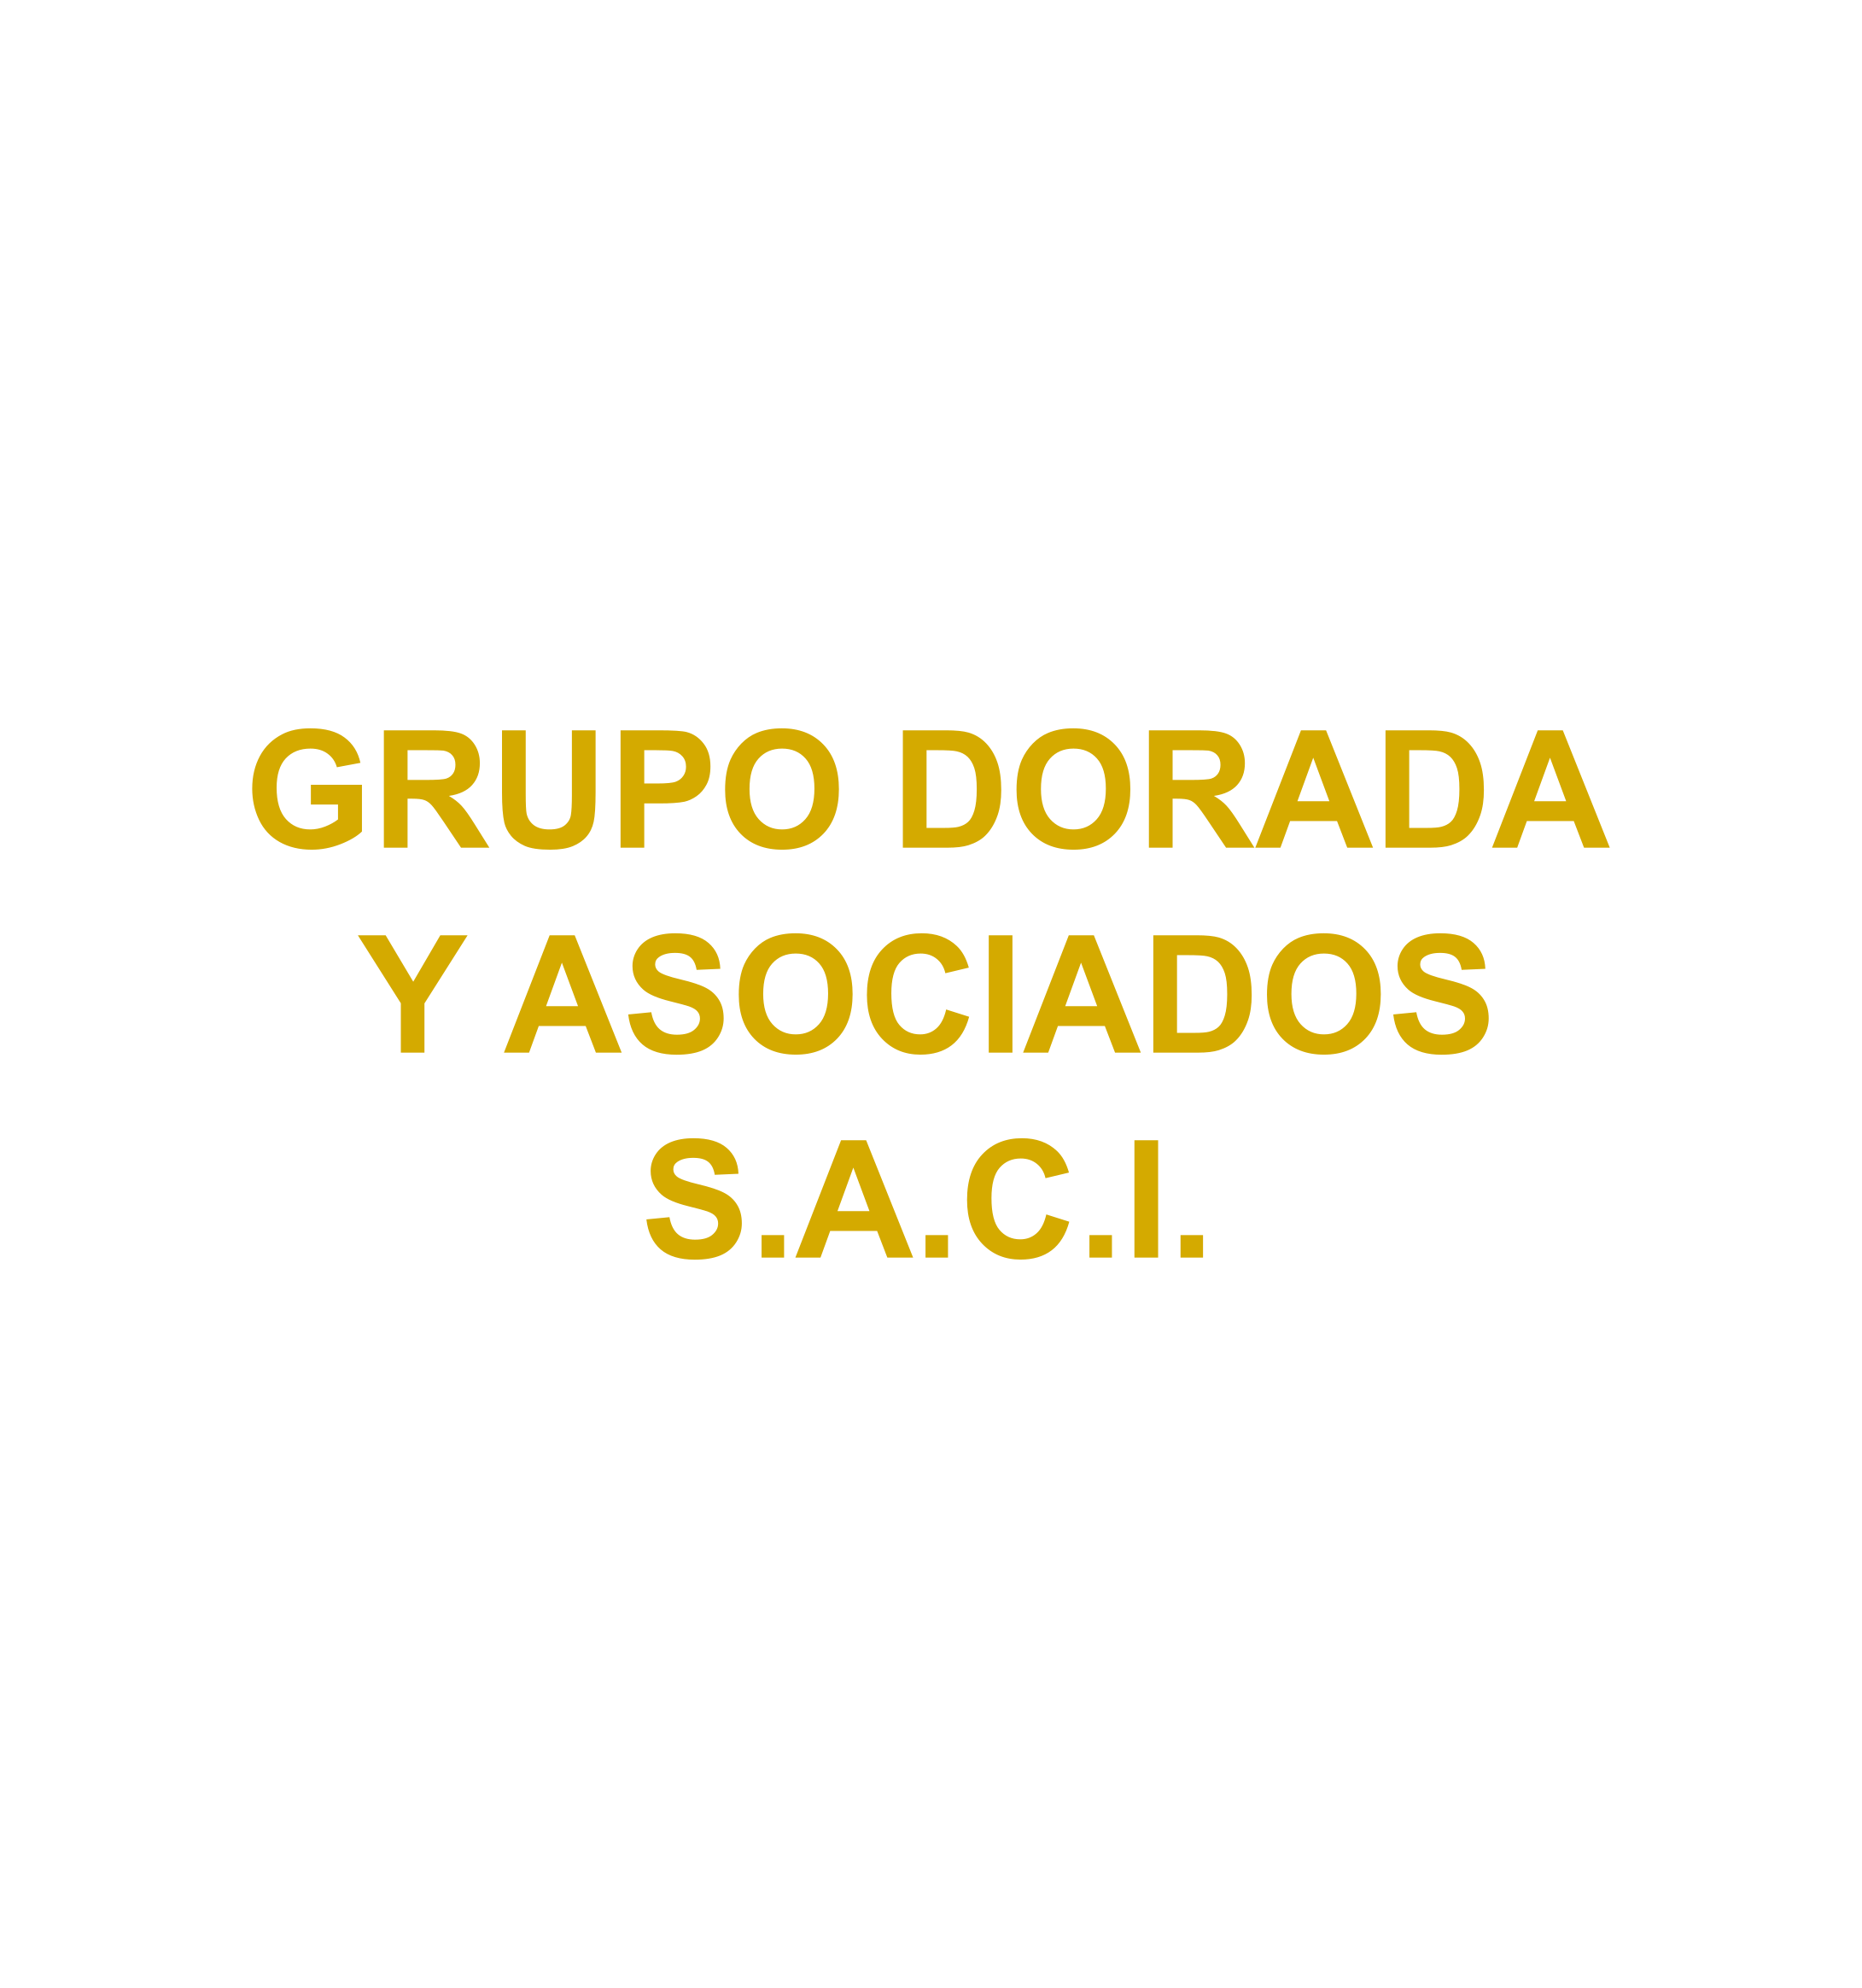 GRUPO DORADA Y ASOCIADOS S.A.C.I.